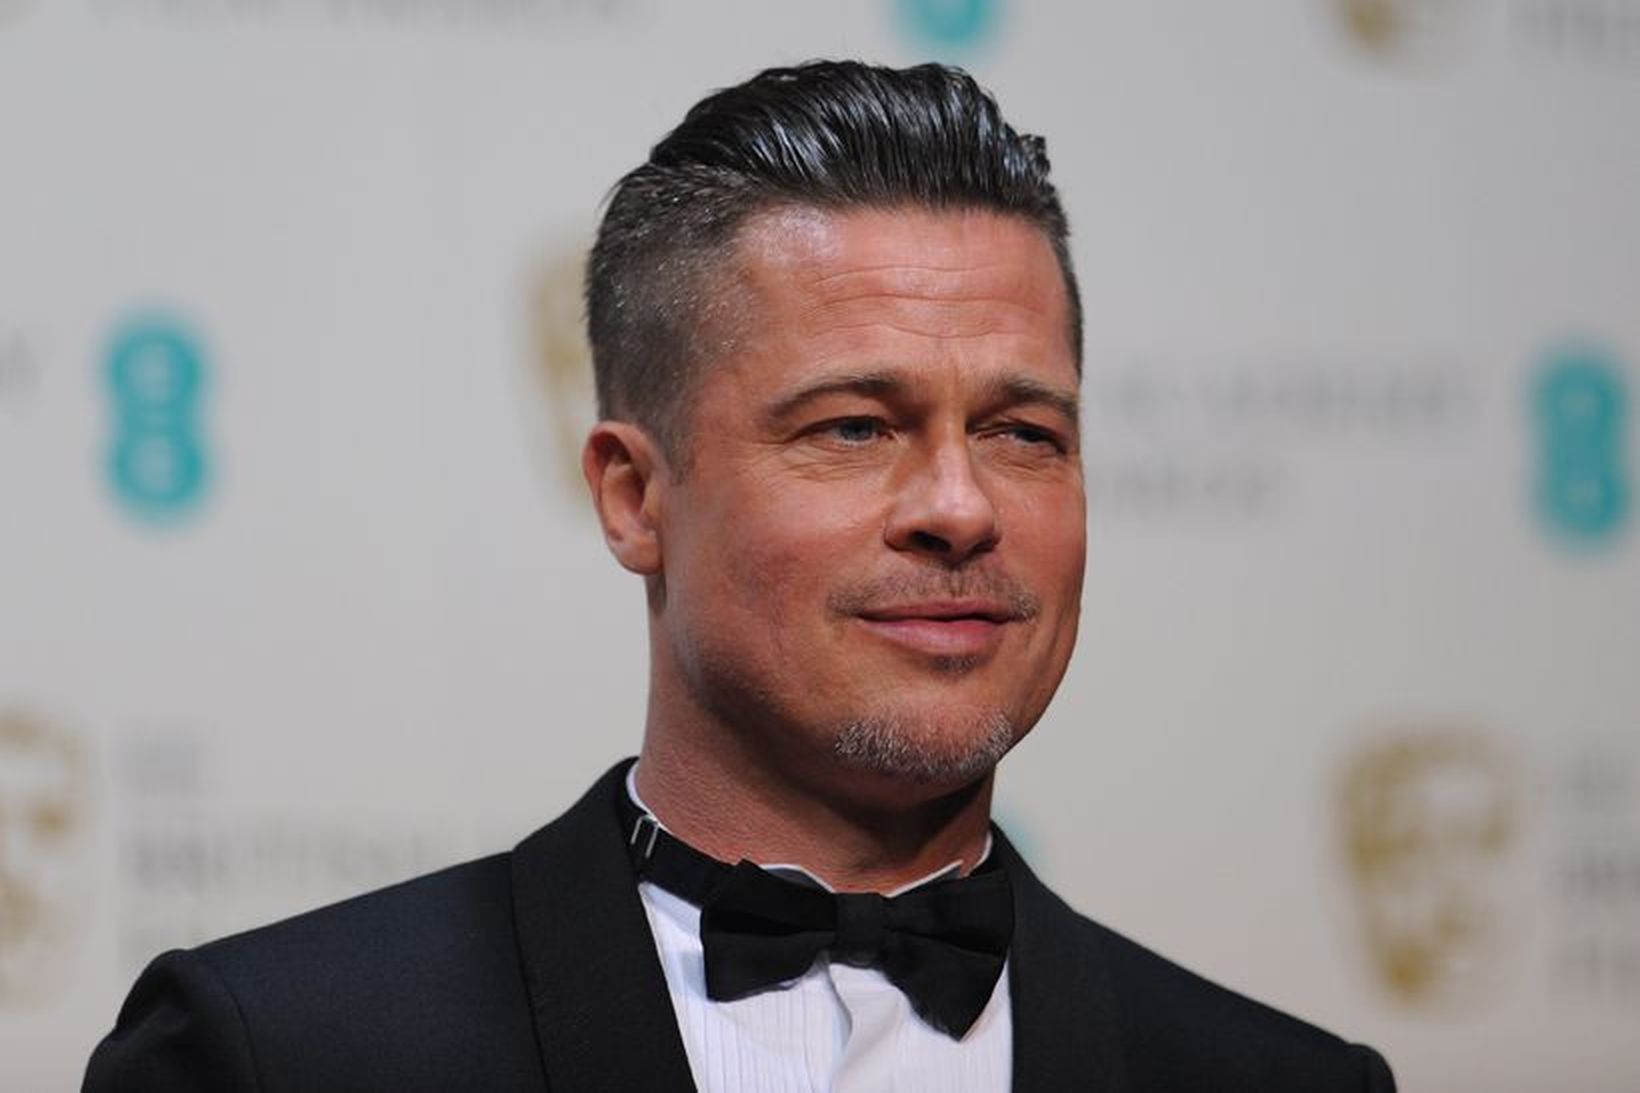 Brad Pitt fékk ágæta brúðkaupsgjöf frá eiginkonunni.